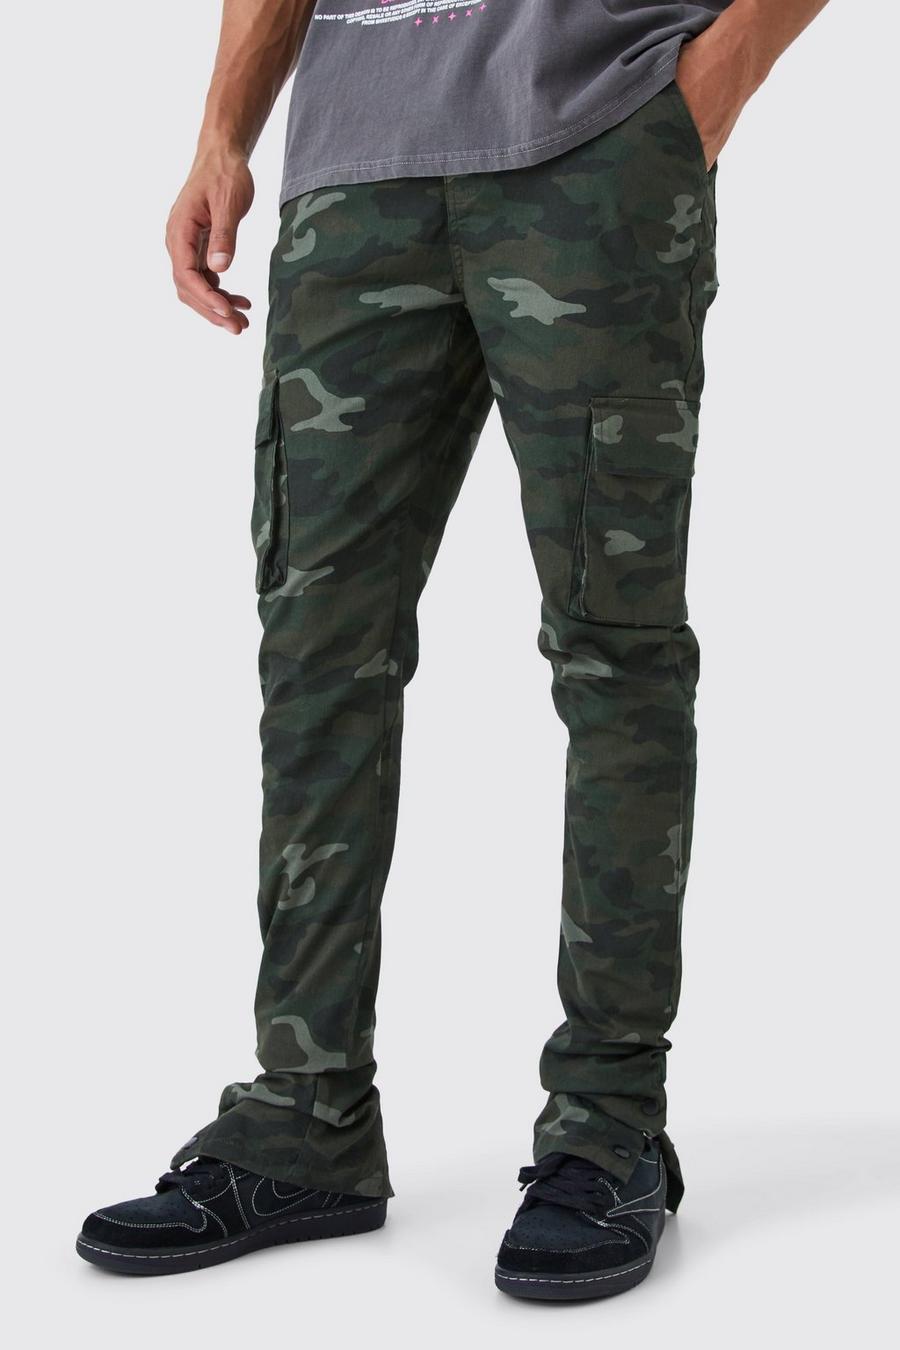 Pantaloni Cargo Tall Skinny Fit in fantasia militare con pieghe sul fondo e bottoni a pressione sul fondo, Khaki kaki